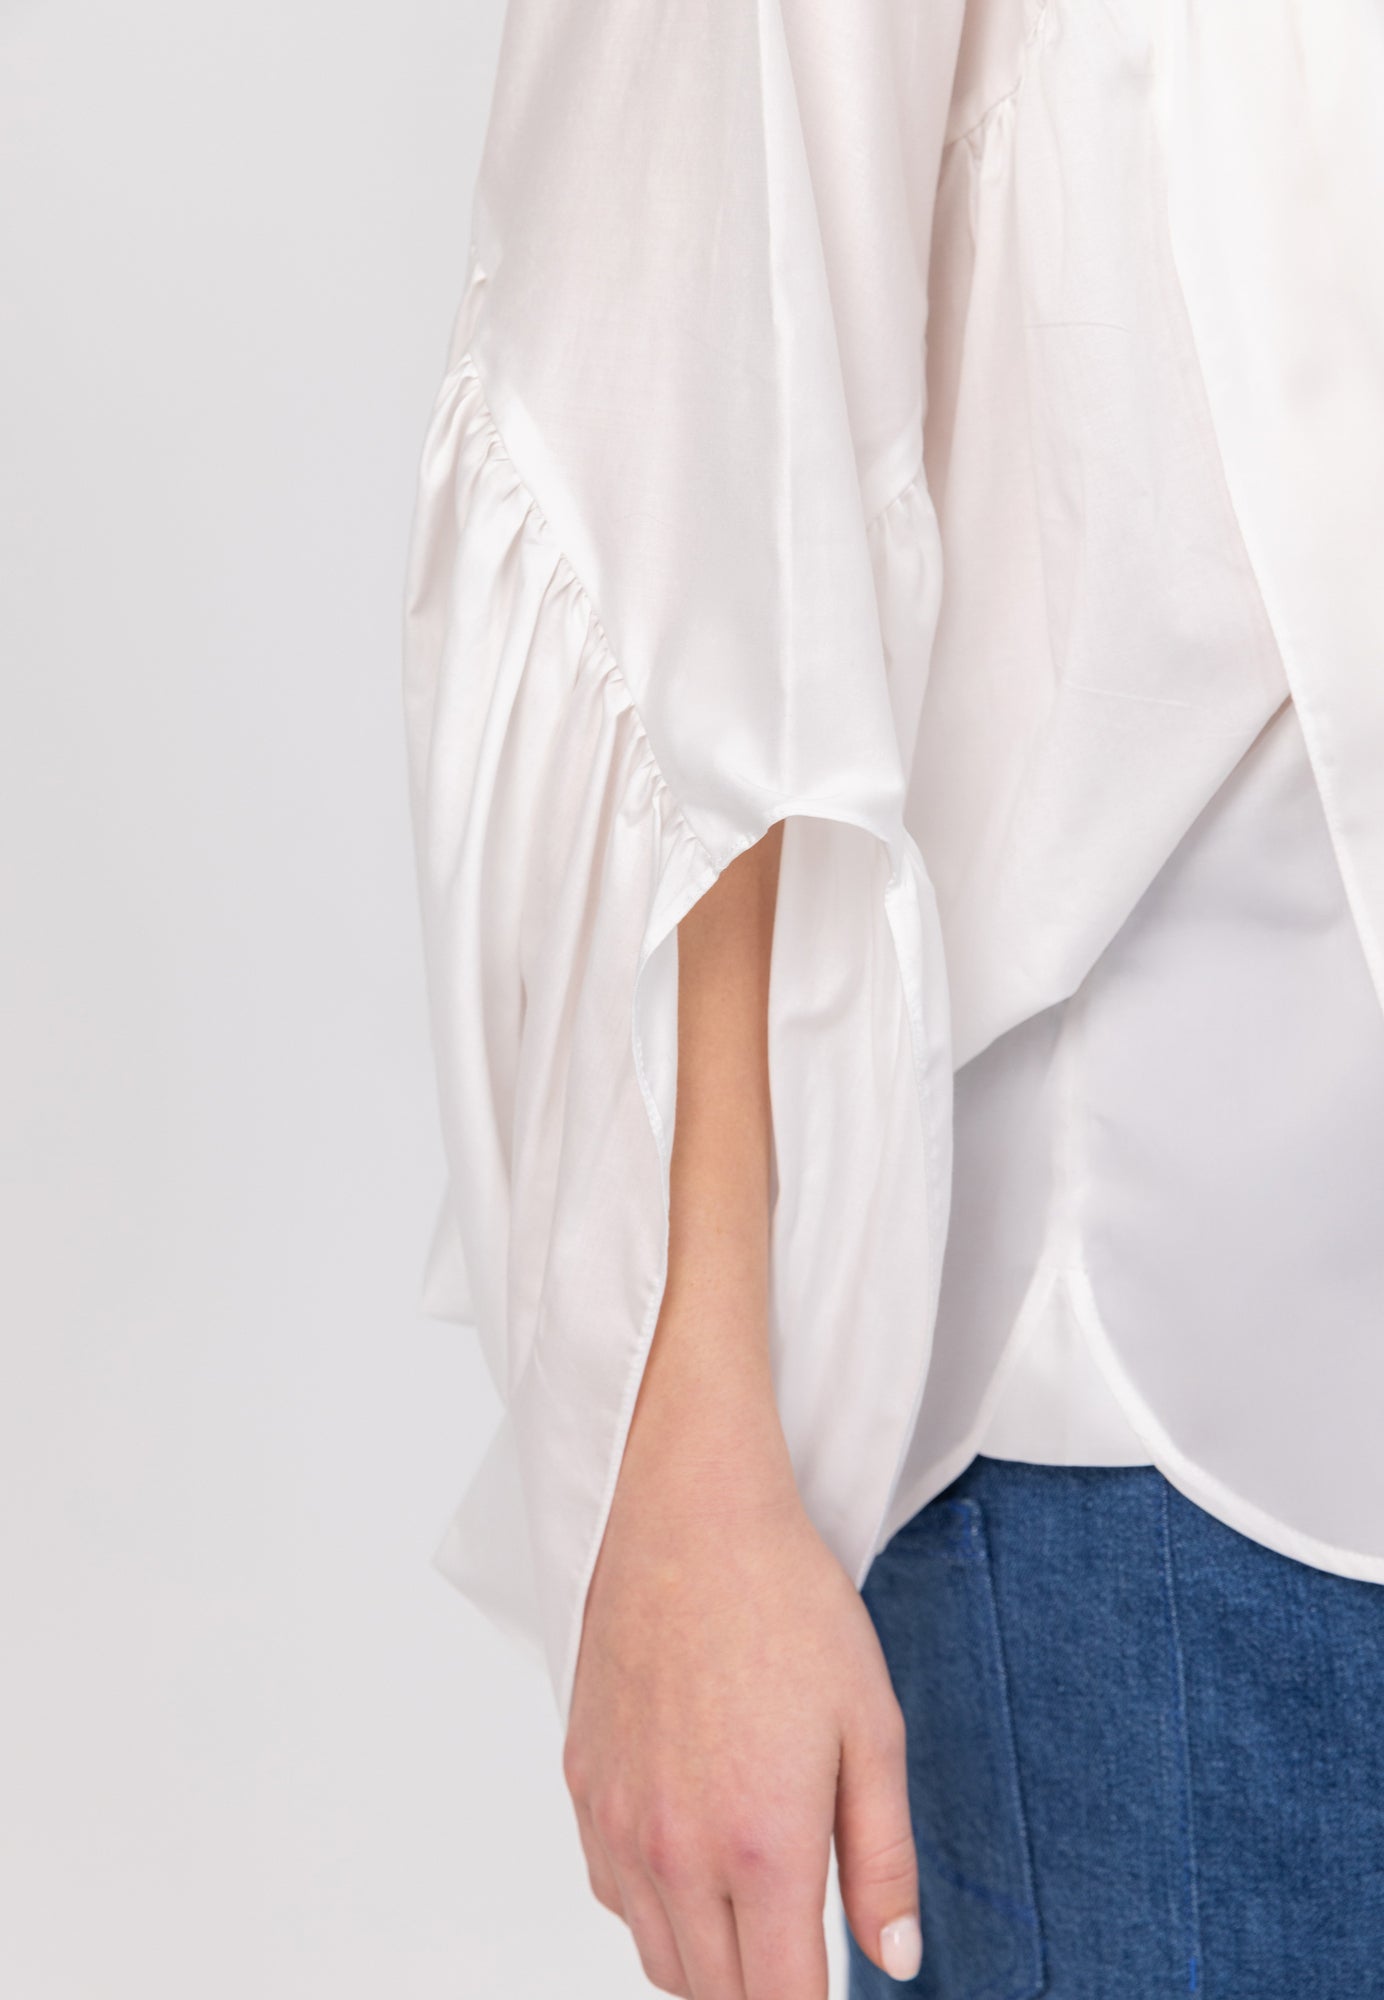 Bluse aus 100% feiner Baumwolle, Rundhalsausschnitt und breiten horizontal verlaufenden Volants im Vorder- und Rückteil sowie an den Ärmeln ausgestattet